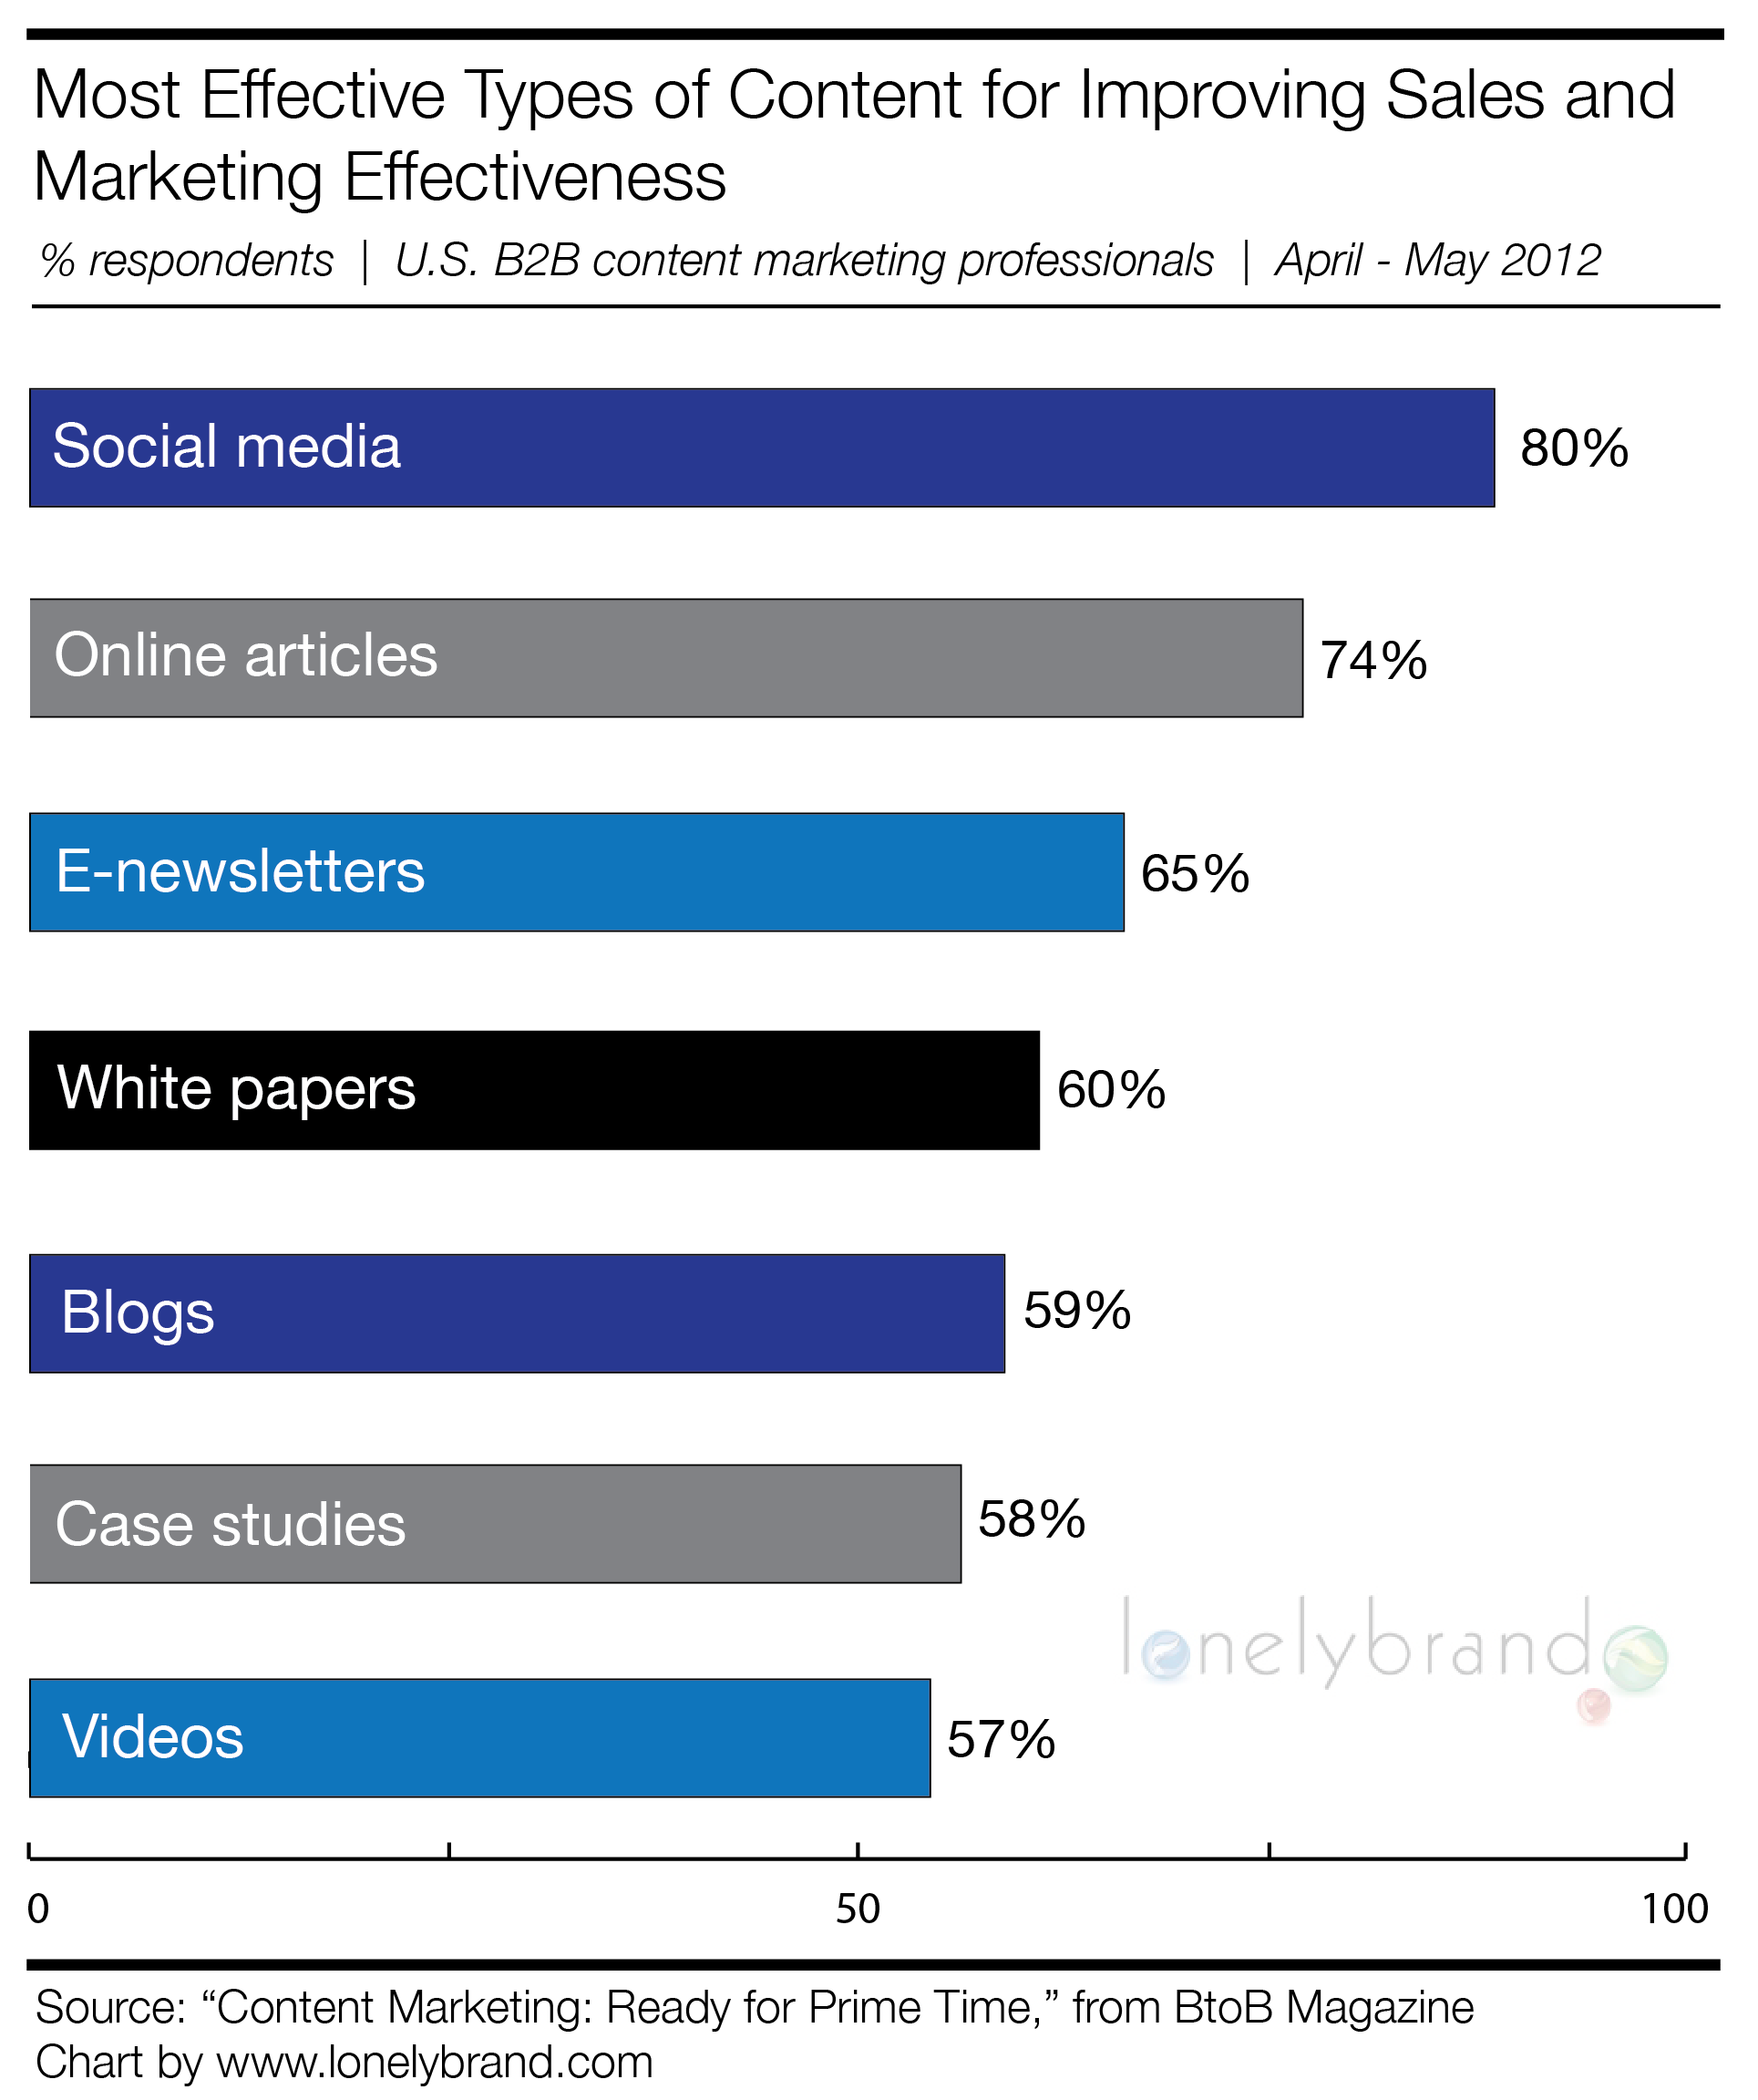 Effective B2B Content Marketing Tactics 2012